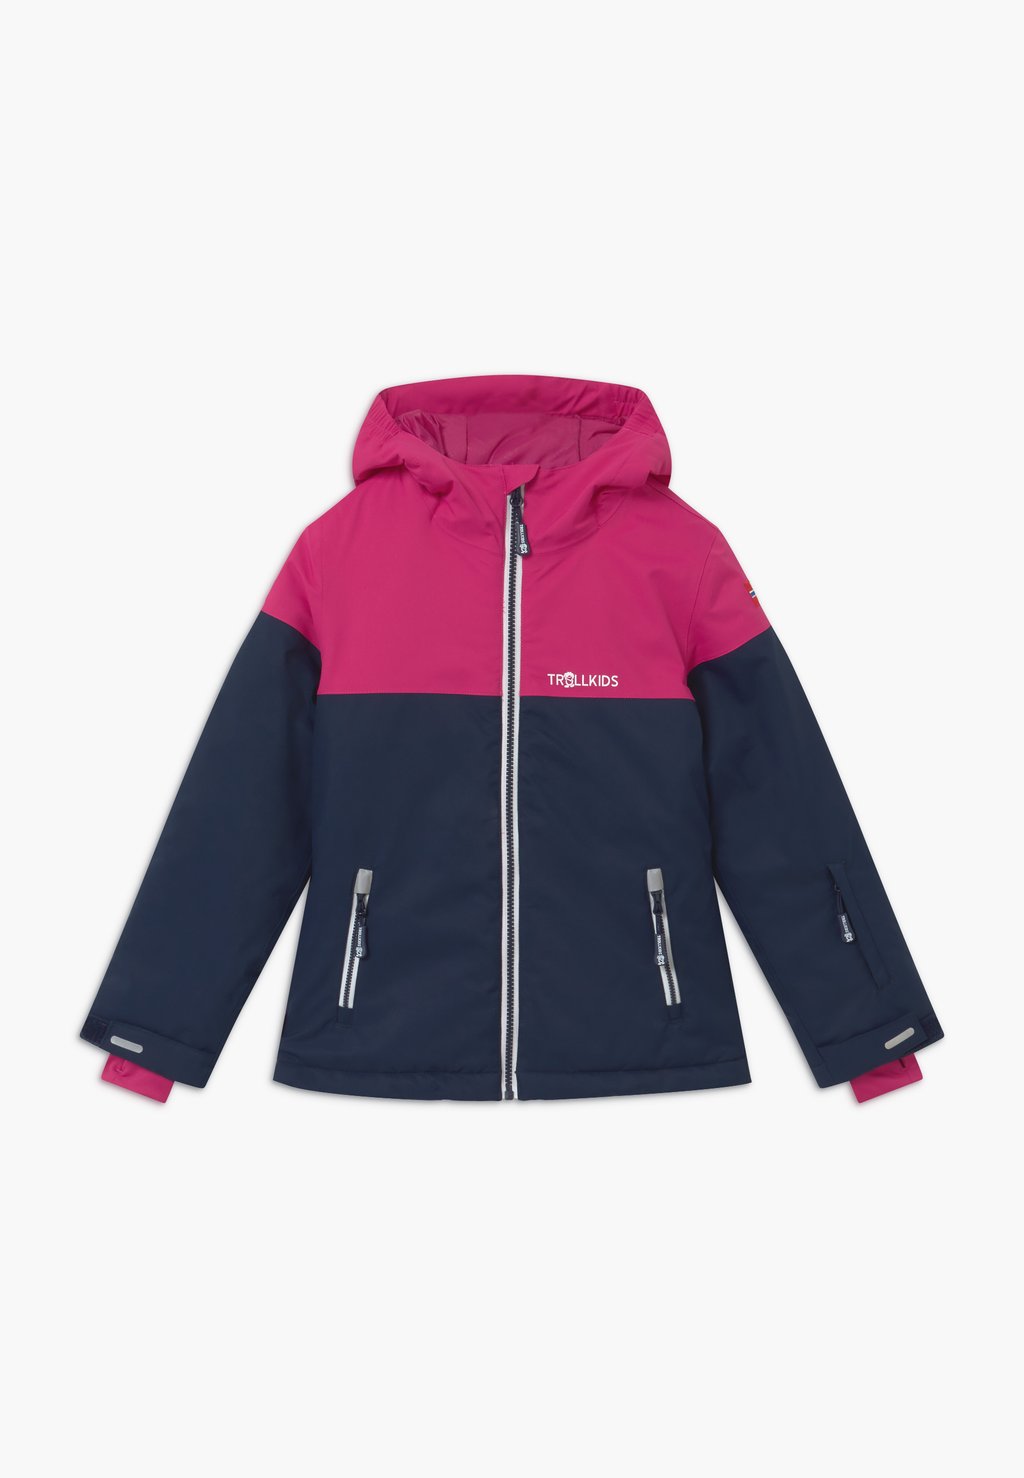 Лыжная куртка Girls Hallingdal Unisex TrollKids, цвет navy/pink/white лыжная куртка trollkids lifjell цвет grau pink